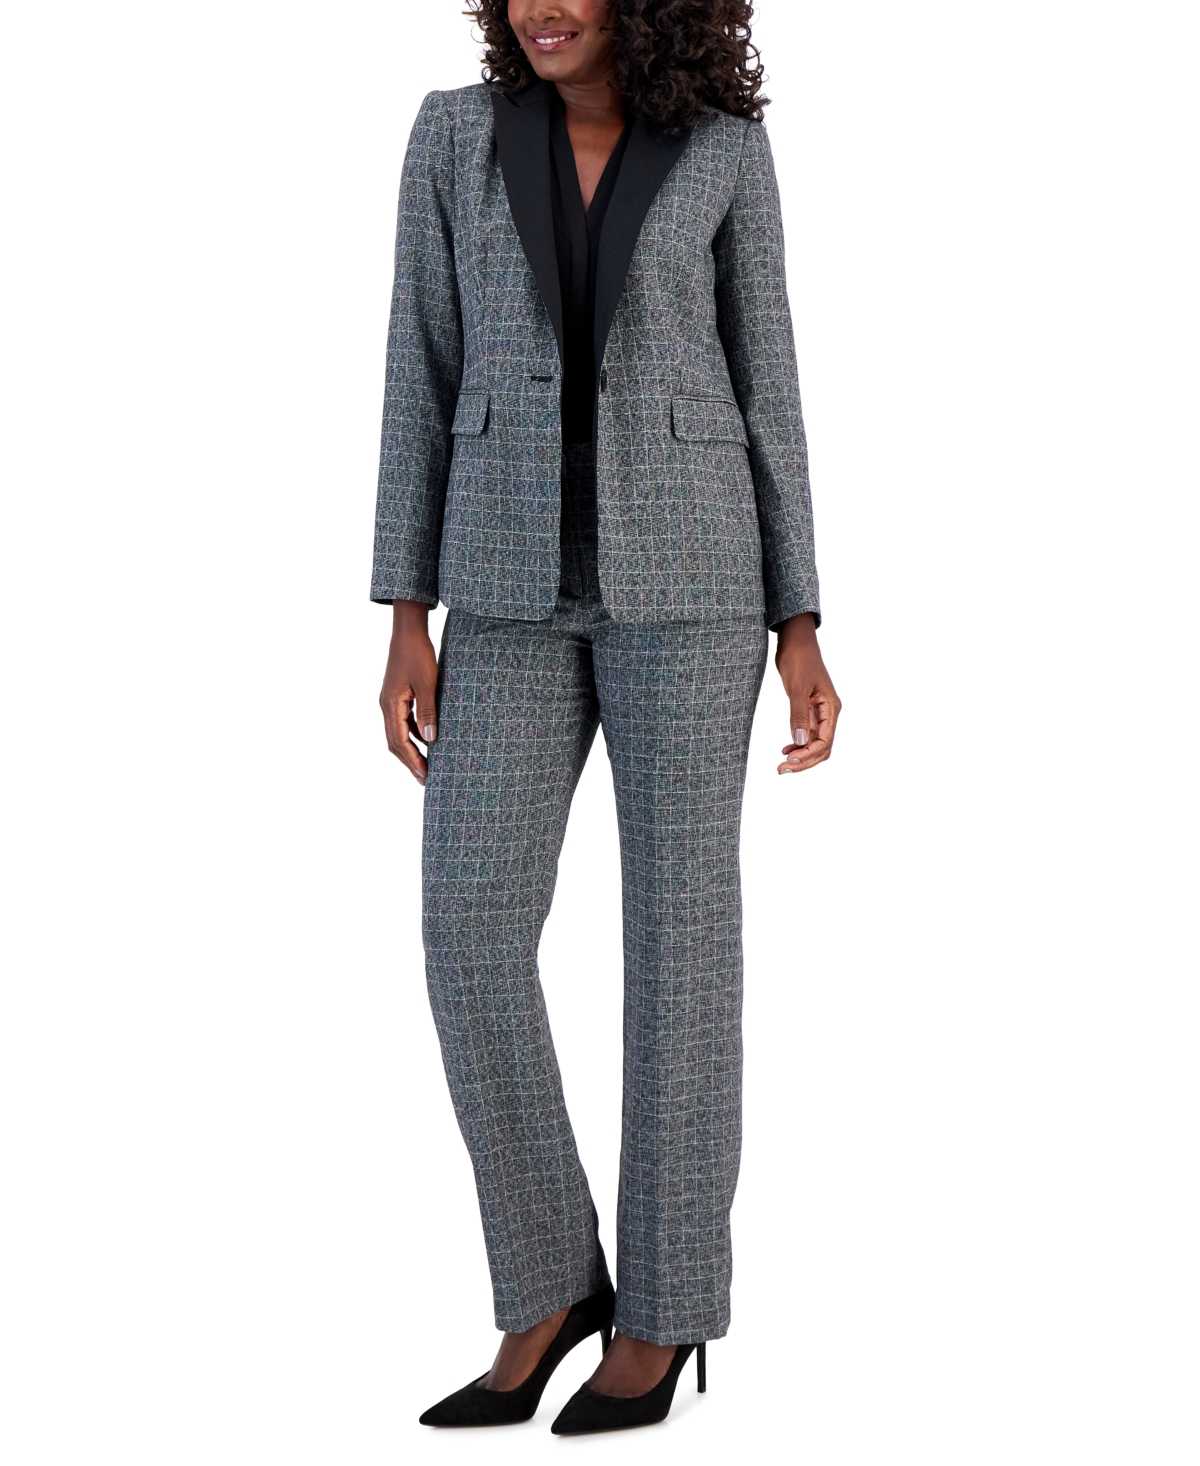 Le Suit Women's Plaid One-button Contrast-collar Pantsuit, Regular & Petite Sizes In Black Multi